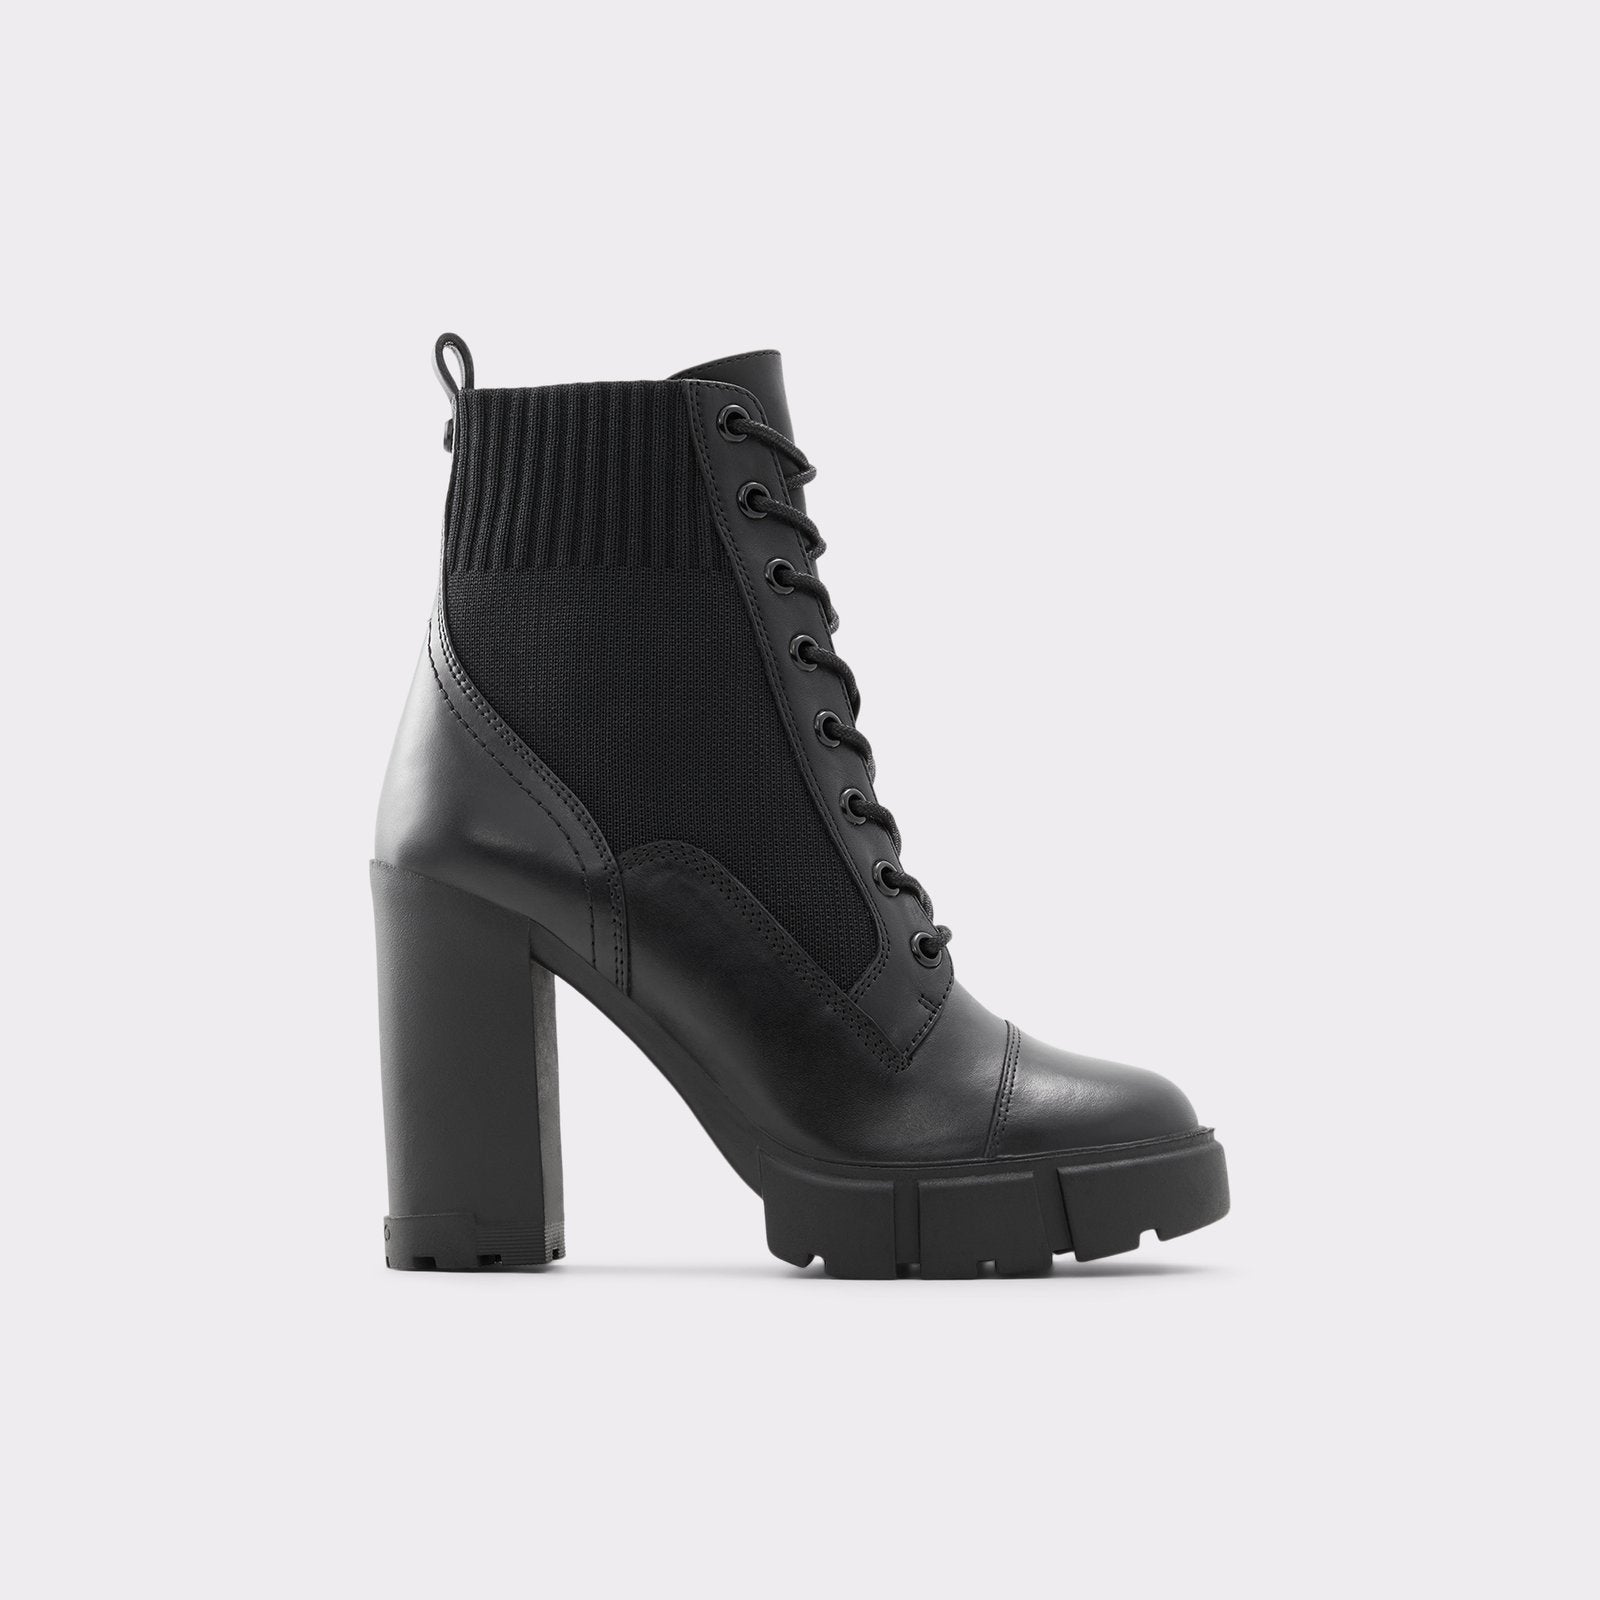 Aldo Women’s Ankle Boots Rebel (Black)